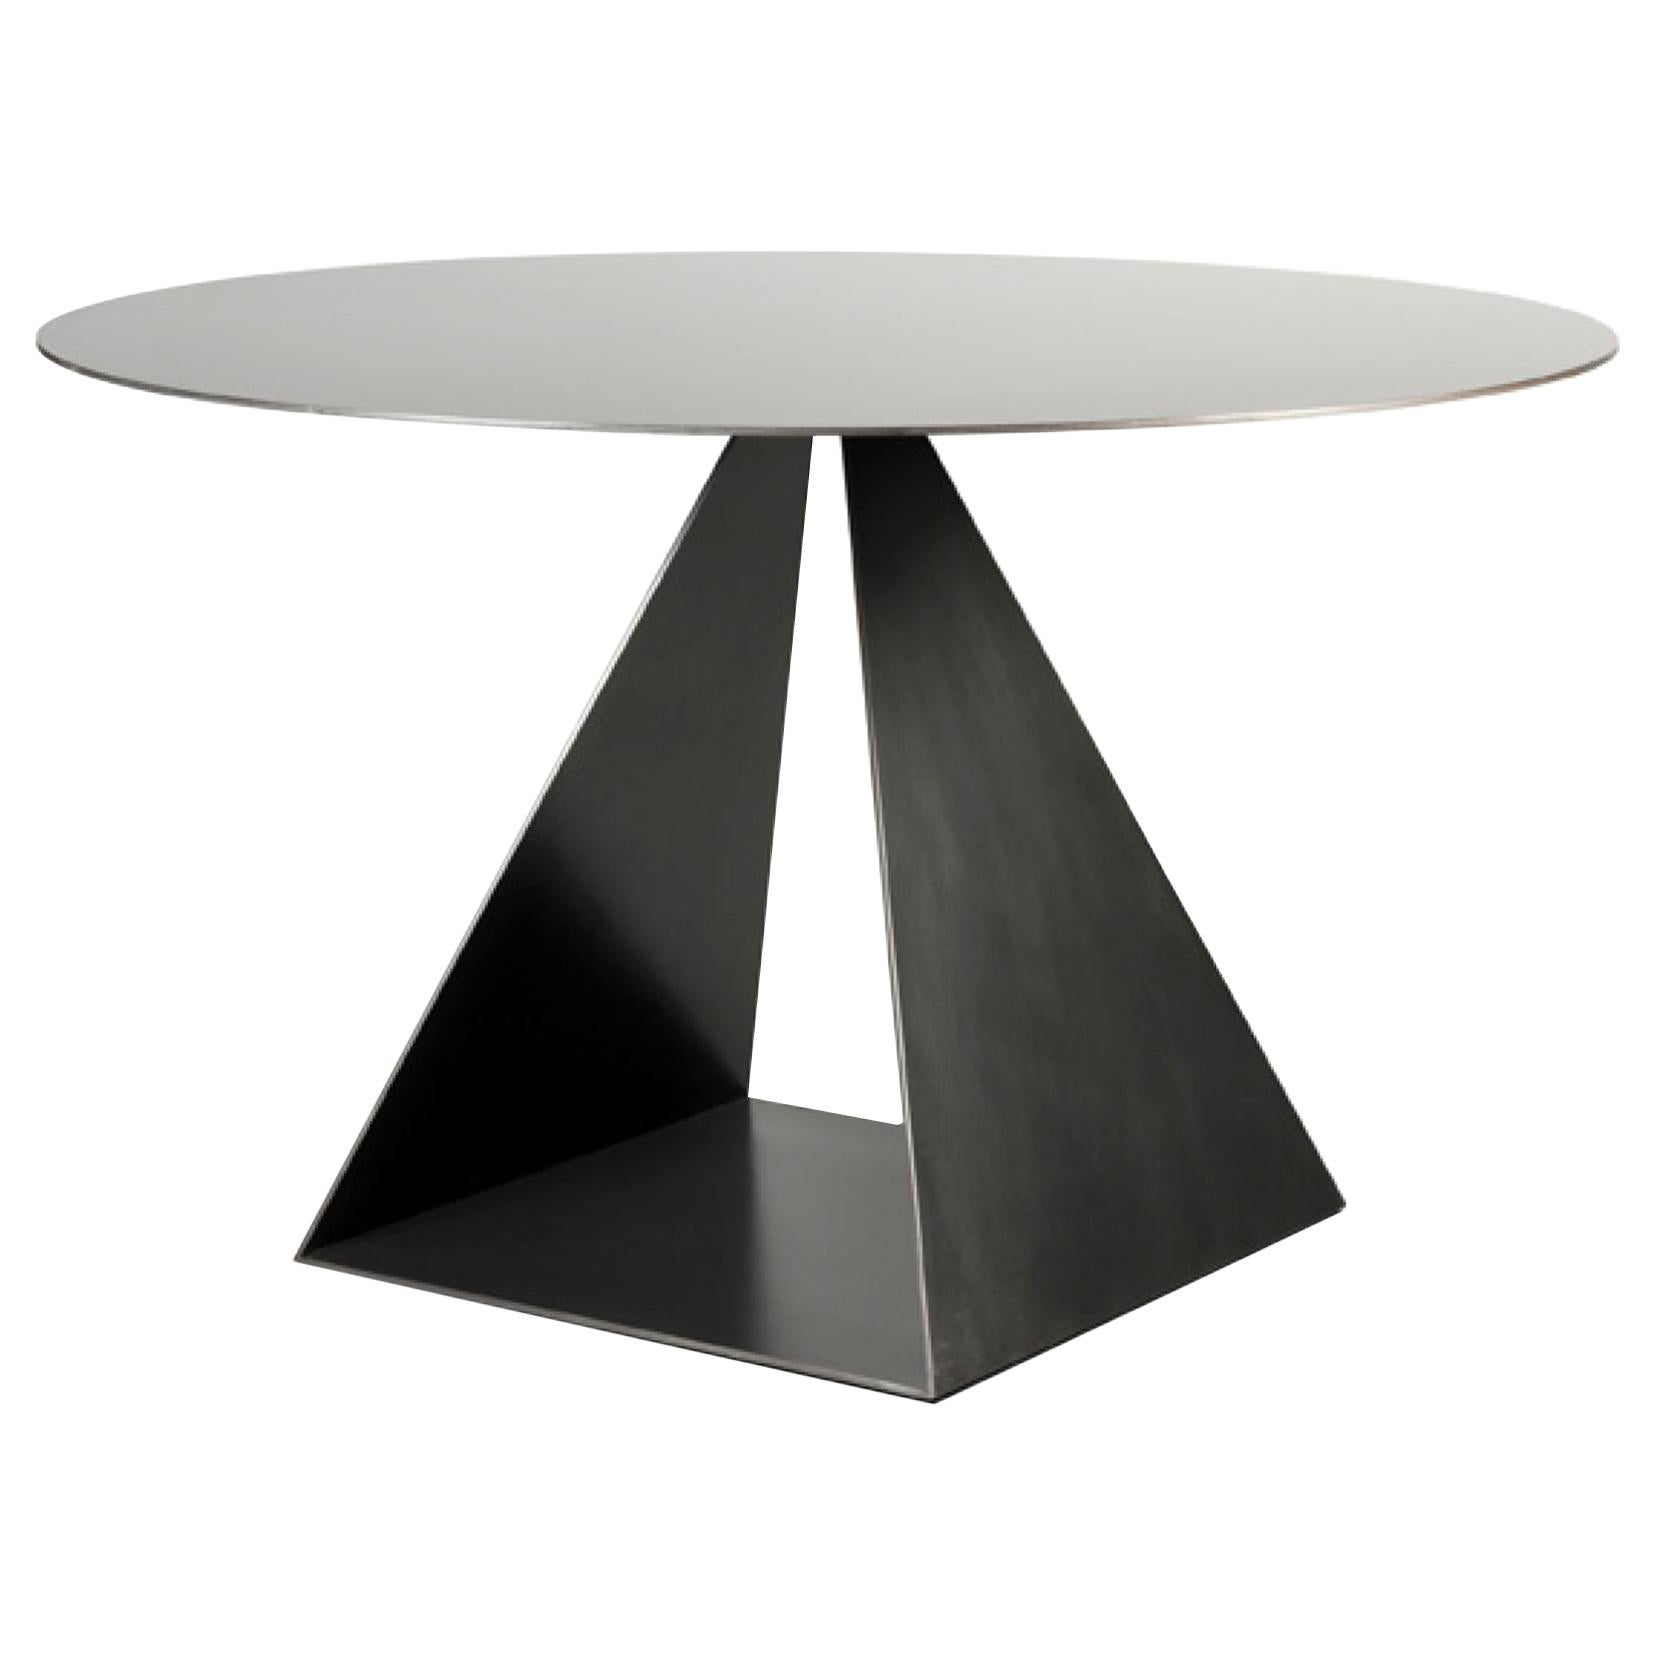 Geometrischer Dreiecks-Esstisch mit runder Platte aus Metall, geschwärzter Oberfläche, anpassbar